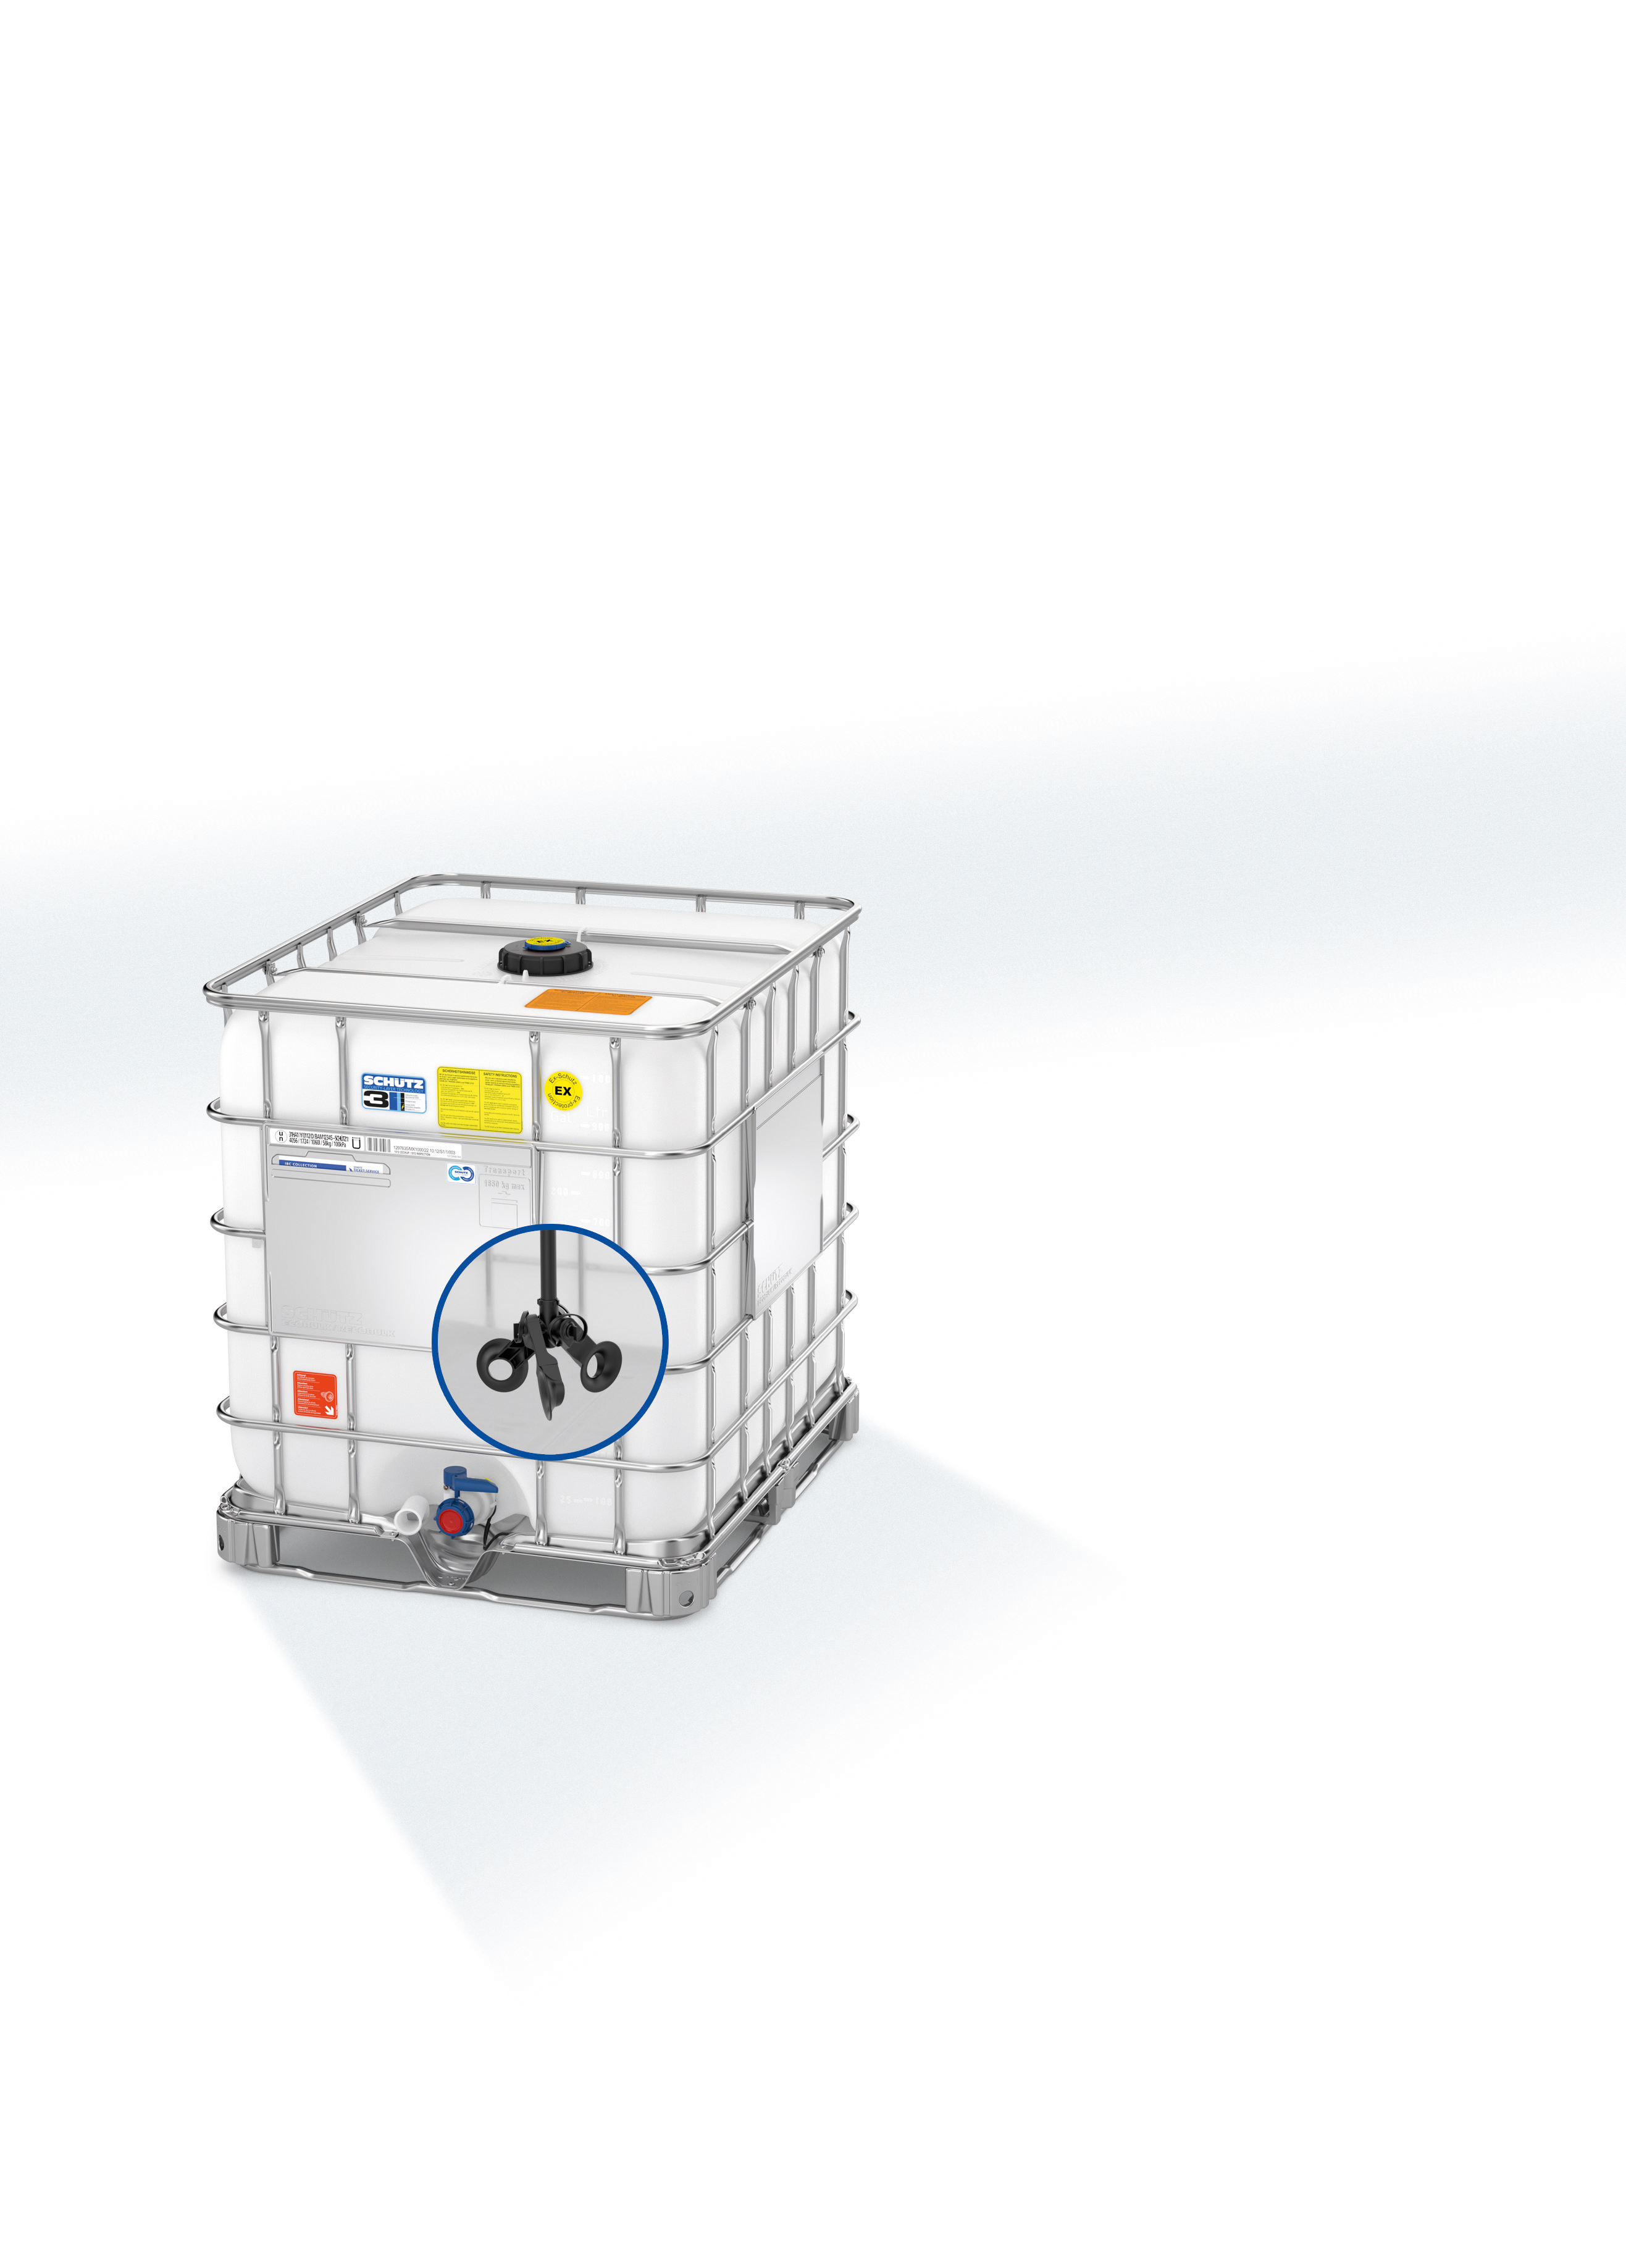 Ecobulk MX mit Impeller: Bei diesem geschlossenen Verpackungssystem bleibt der Container nach dem